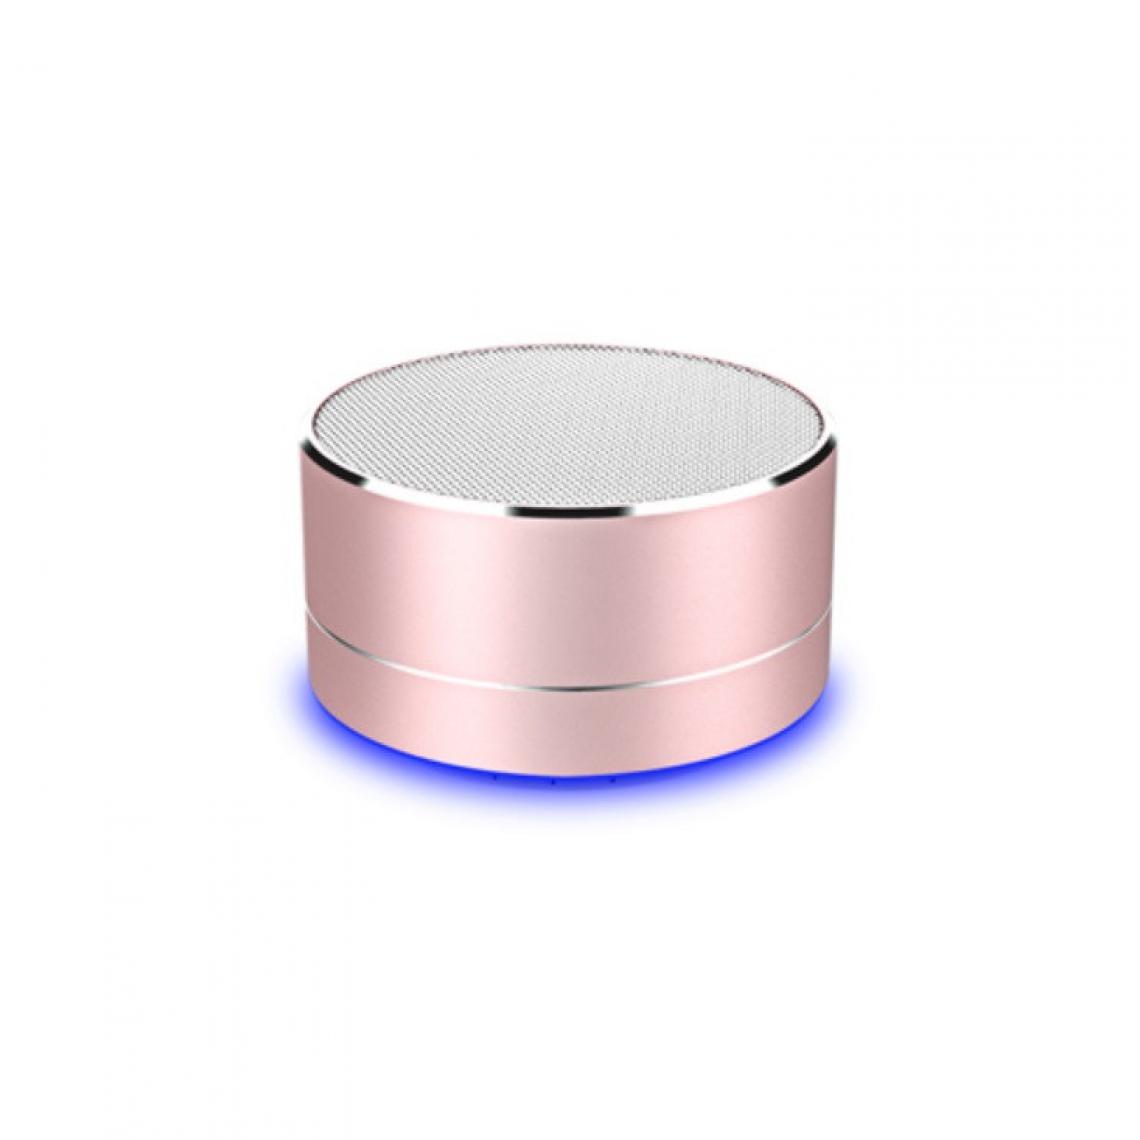 Shot - Enceinte Metal Bluetooth pour ONEPLUS 7 Smartphone Port USB Carte TF Auxiliaire Haut-Parleur Micro Mini (ROSE) - Autres accessoires smartphone